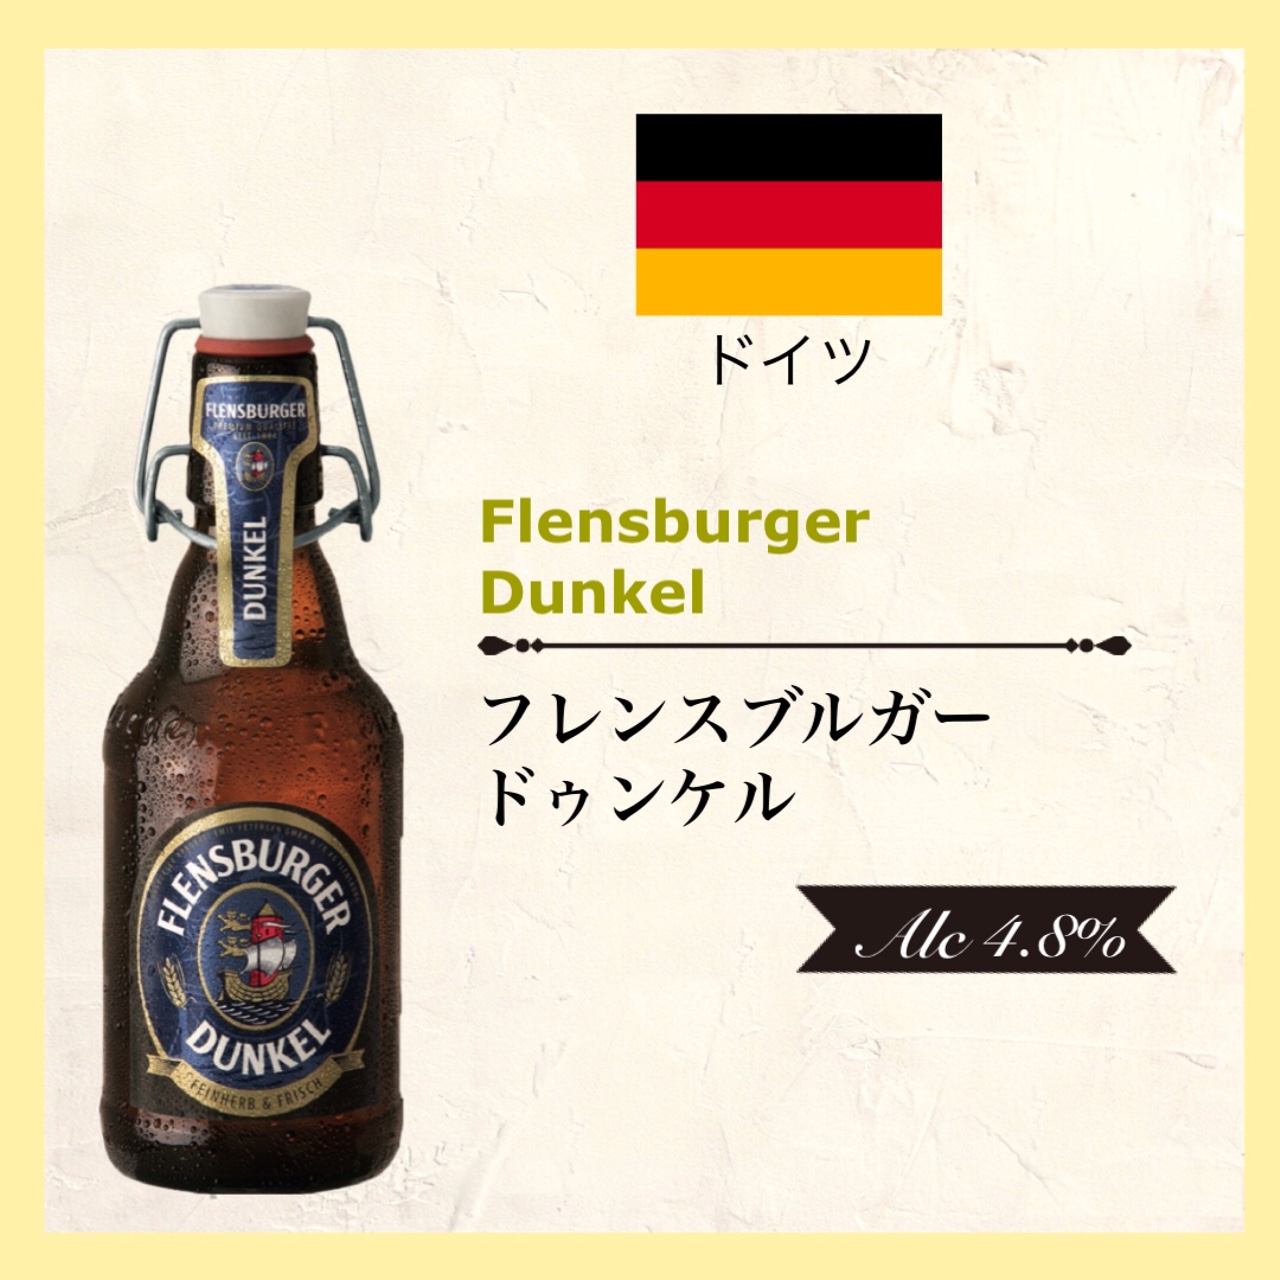 FLENSBURGER Dunkel (ﾌﾚﾝｽﾌﾞﾙｶﾞｰ ﾄﾞｩﾝｹﾙ) 330ml